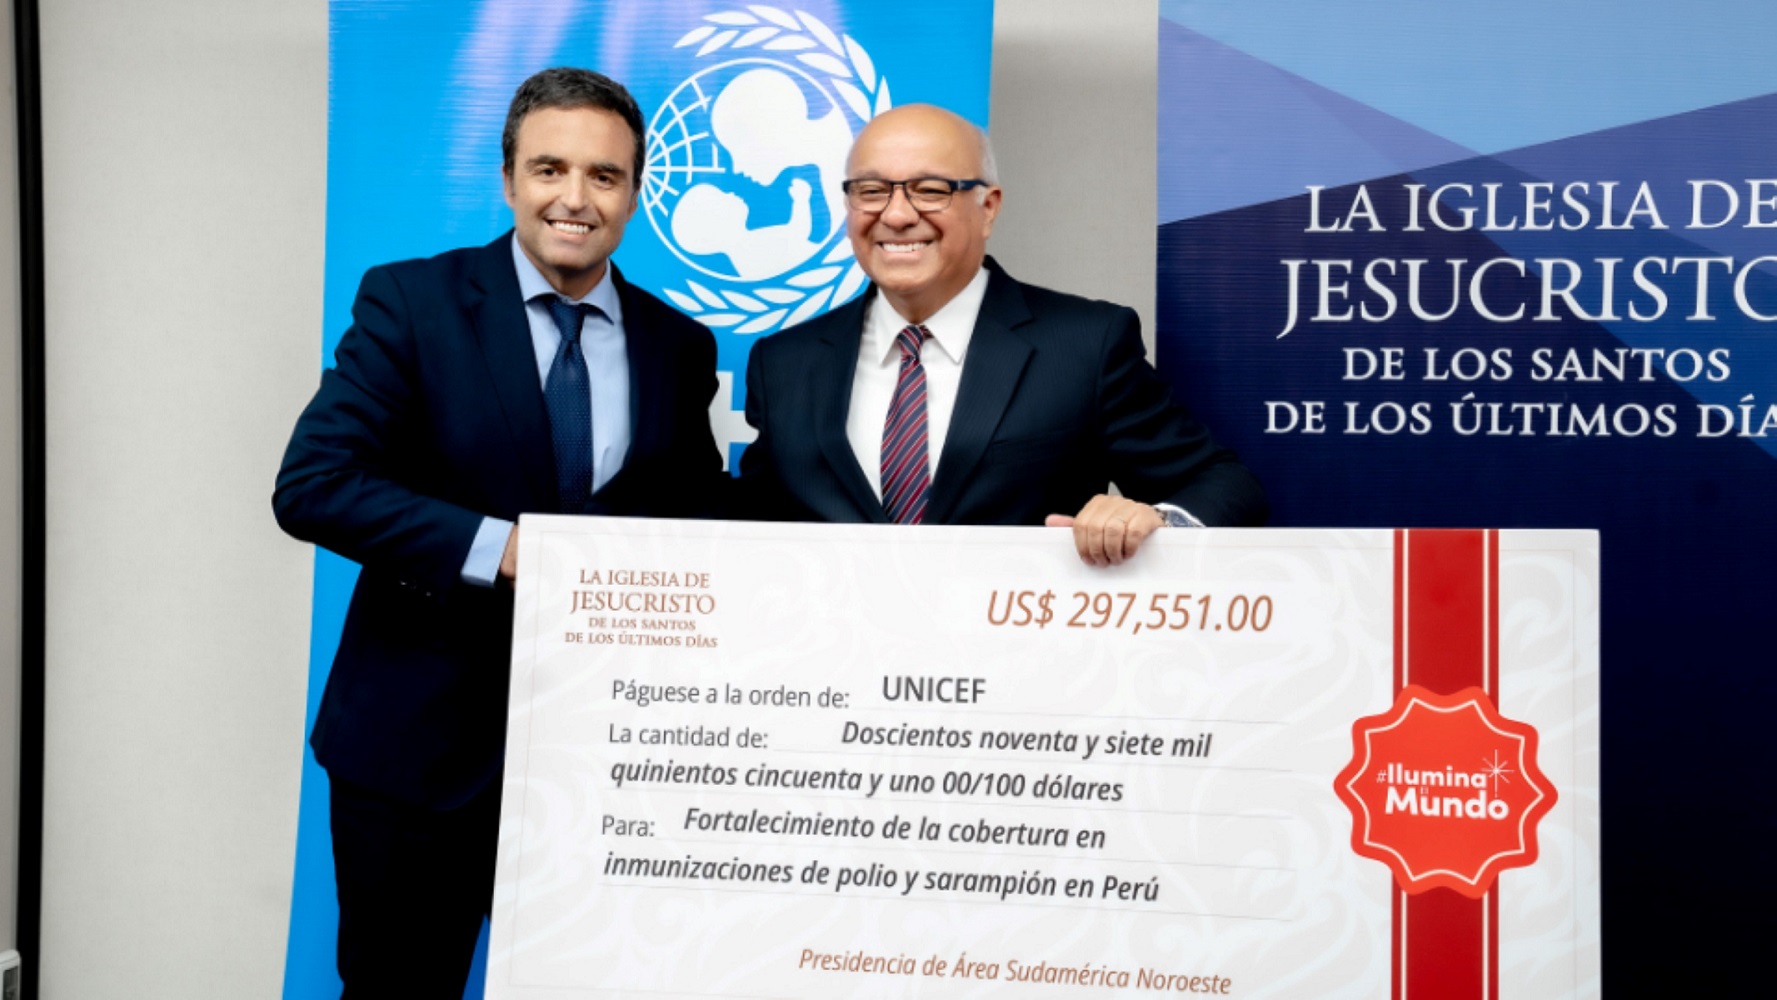 Iglesia de Jesucristo dona US$297,551 a UNICEF en una alianza estratégica para erradicar polio y sarampión en Perú.